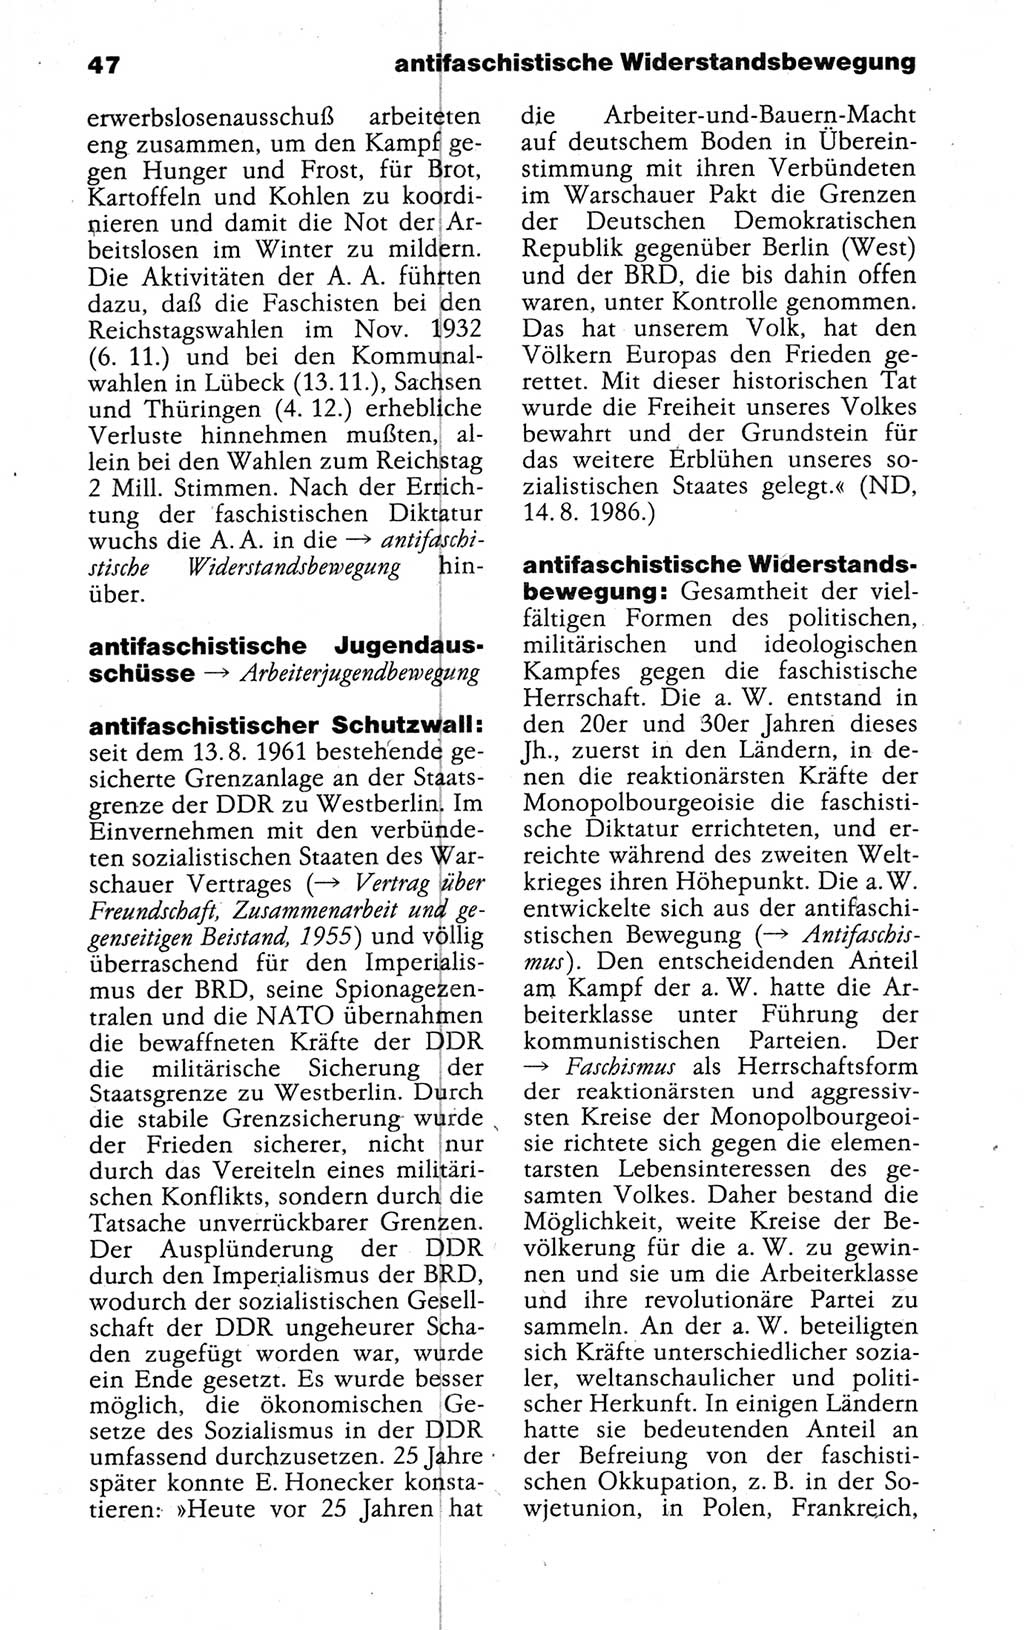 Kleines politisches Wörterbuch [Deutsche Demokratische Republik (DDR)] 1988, Seite 47 (Kl. pol. Wb. DDR 1988, S. 47)